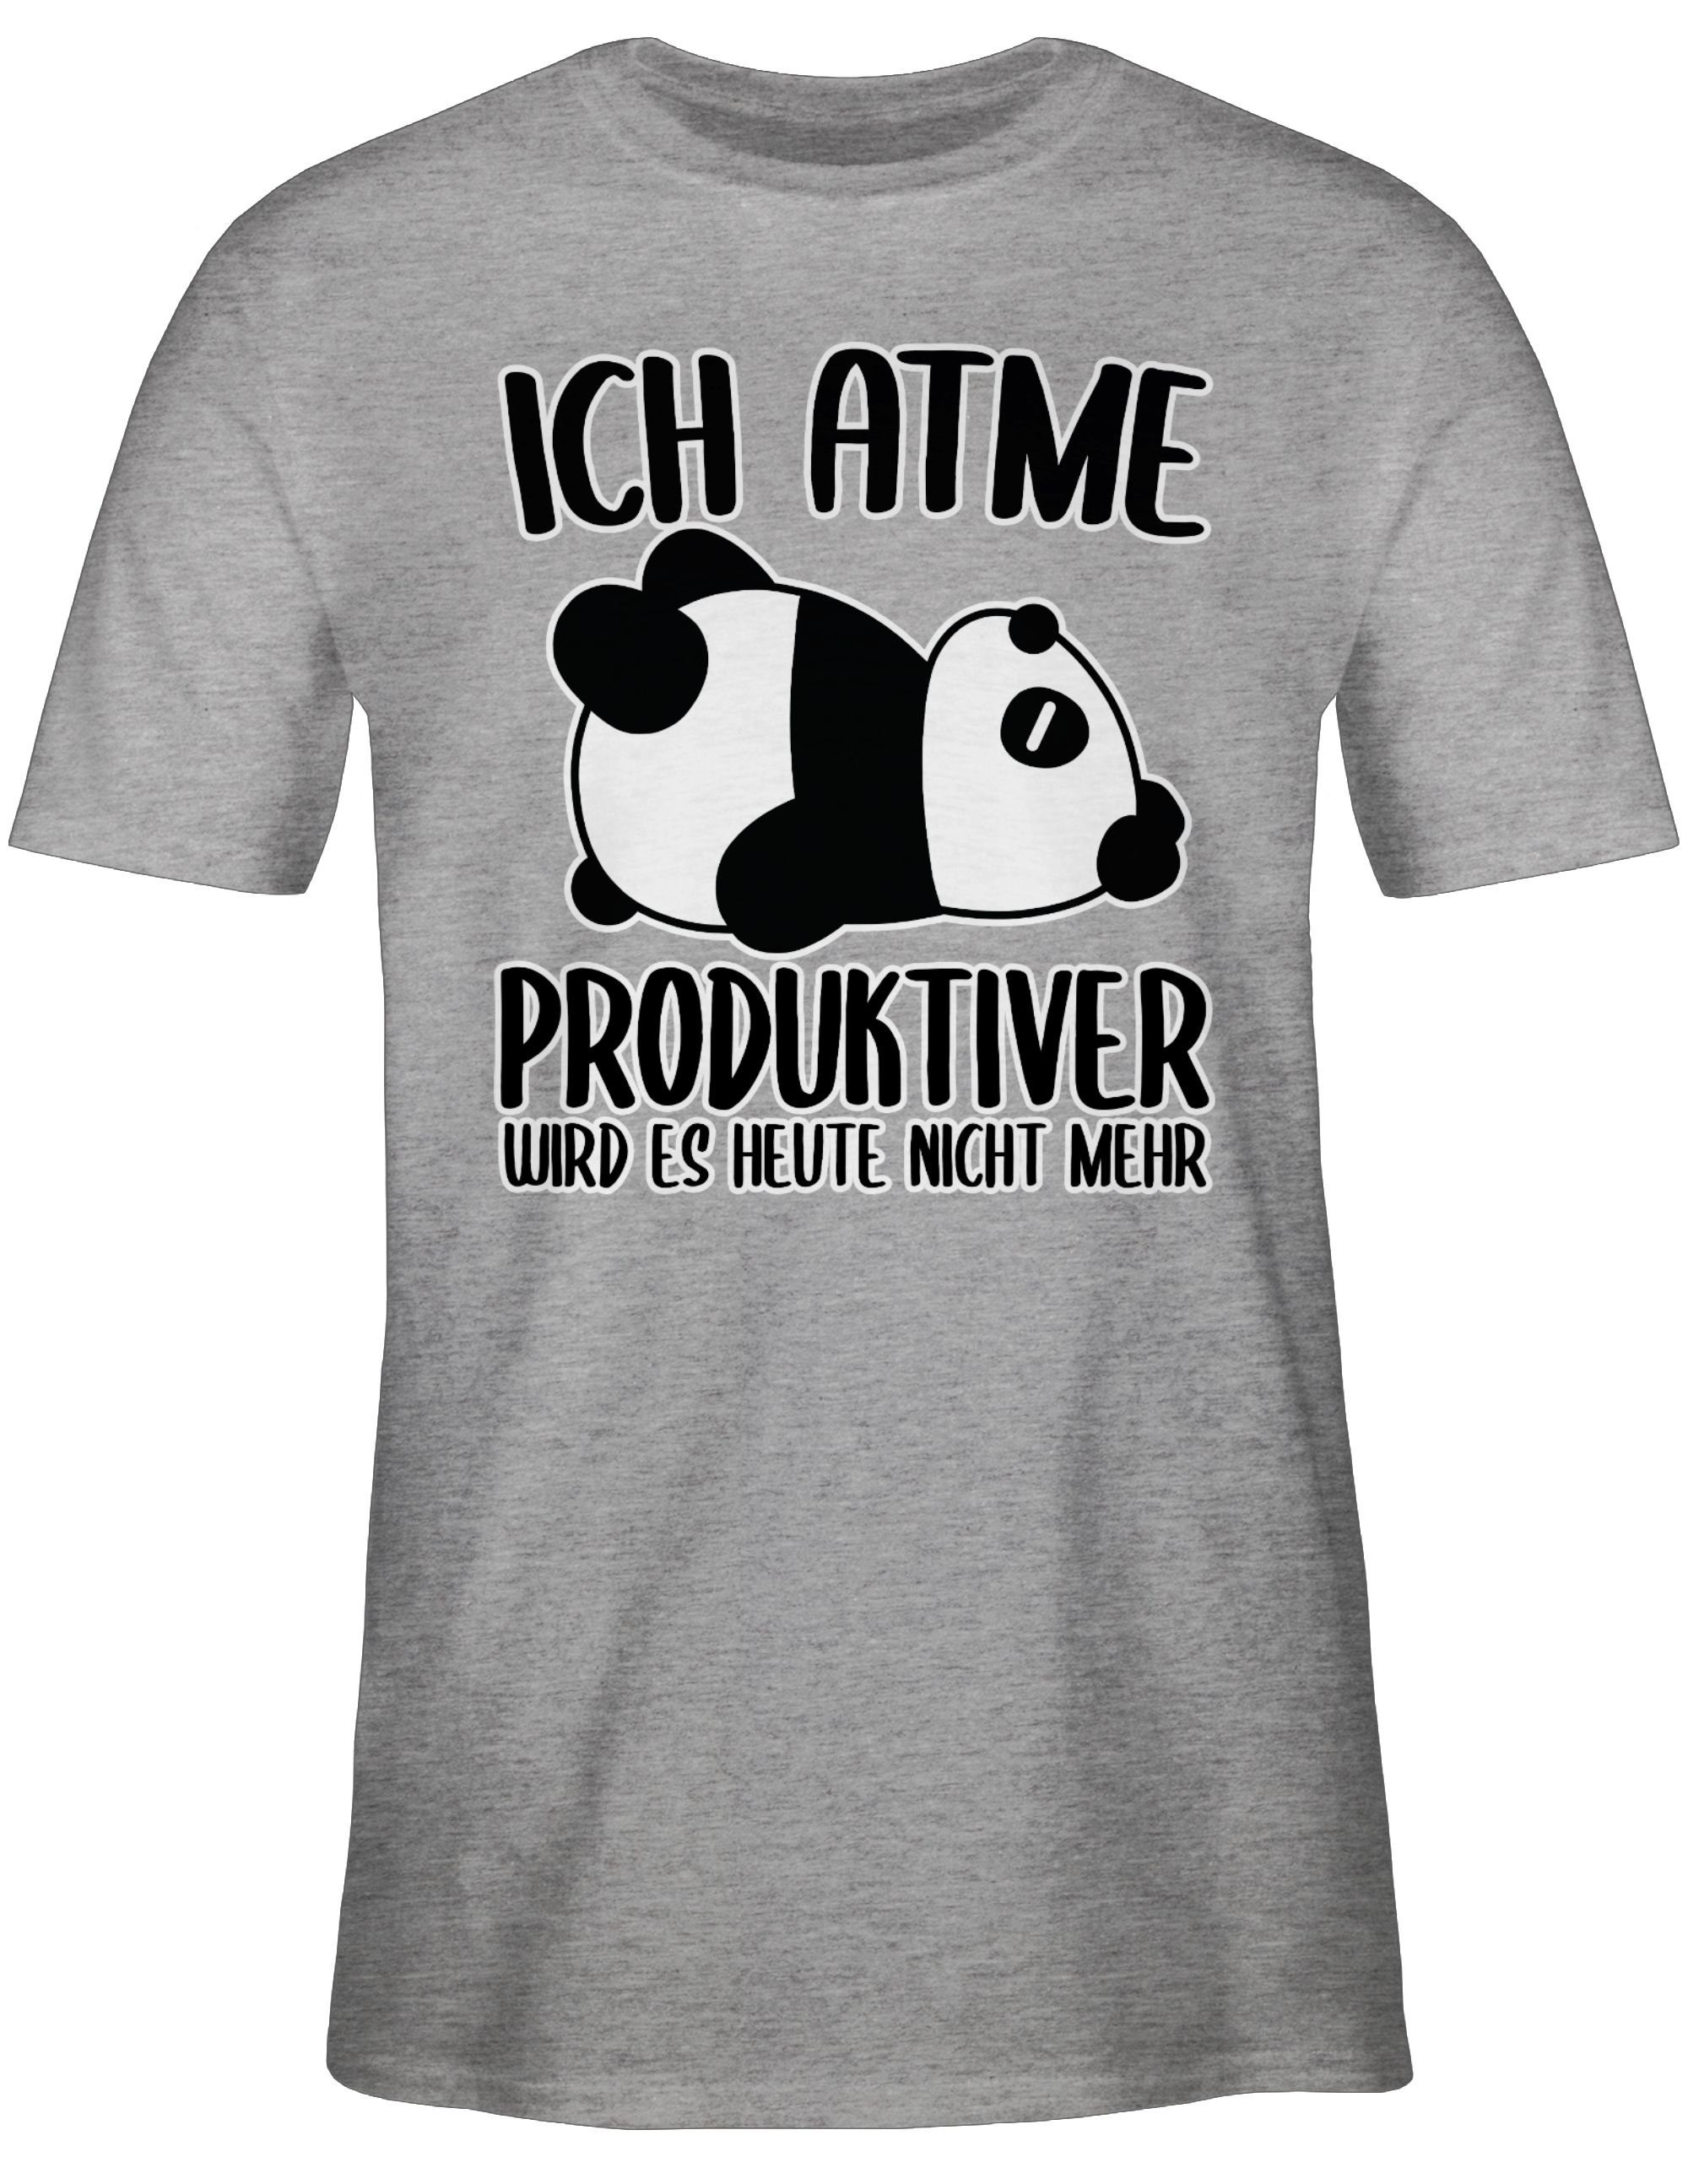 mit Spruch Sprüche Grau 03 mit Ich mehr wird produktiver Statement weiß - Shirtracer meliert nicht T-Shirt es Panda atme